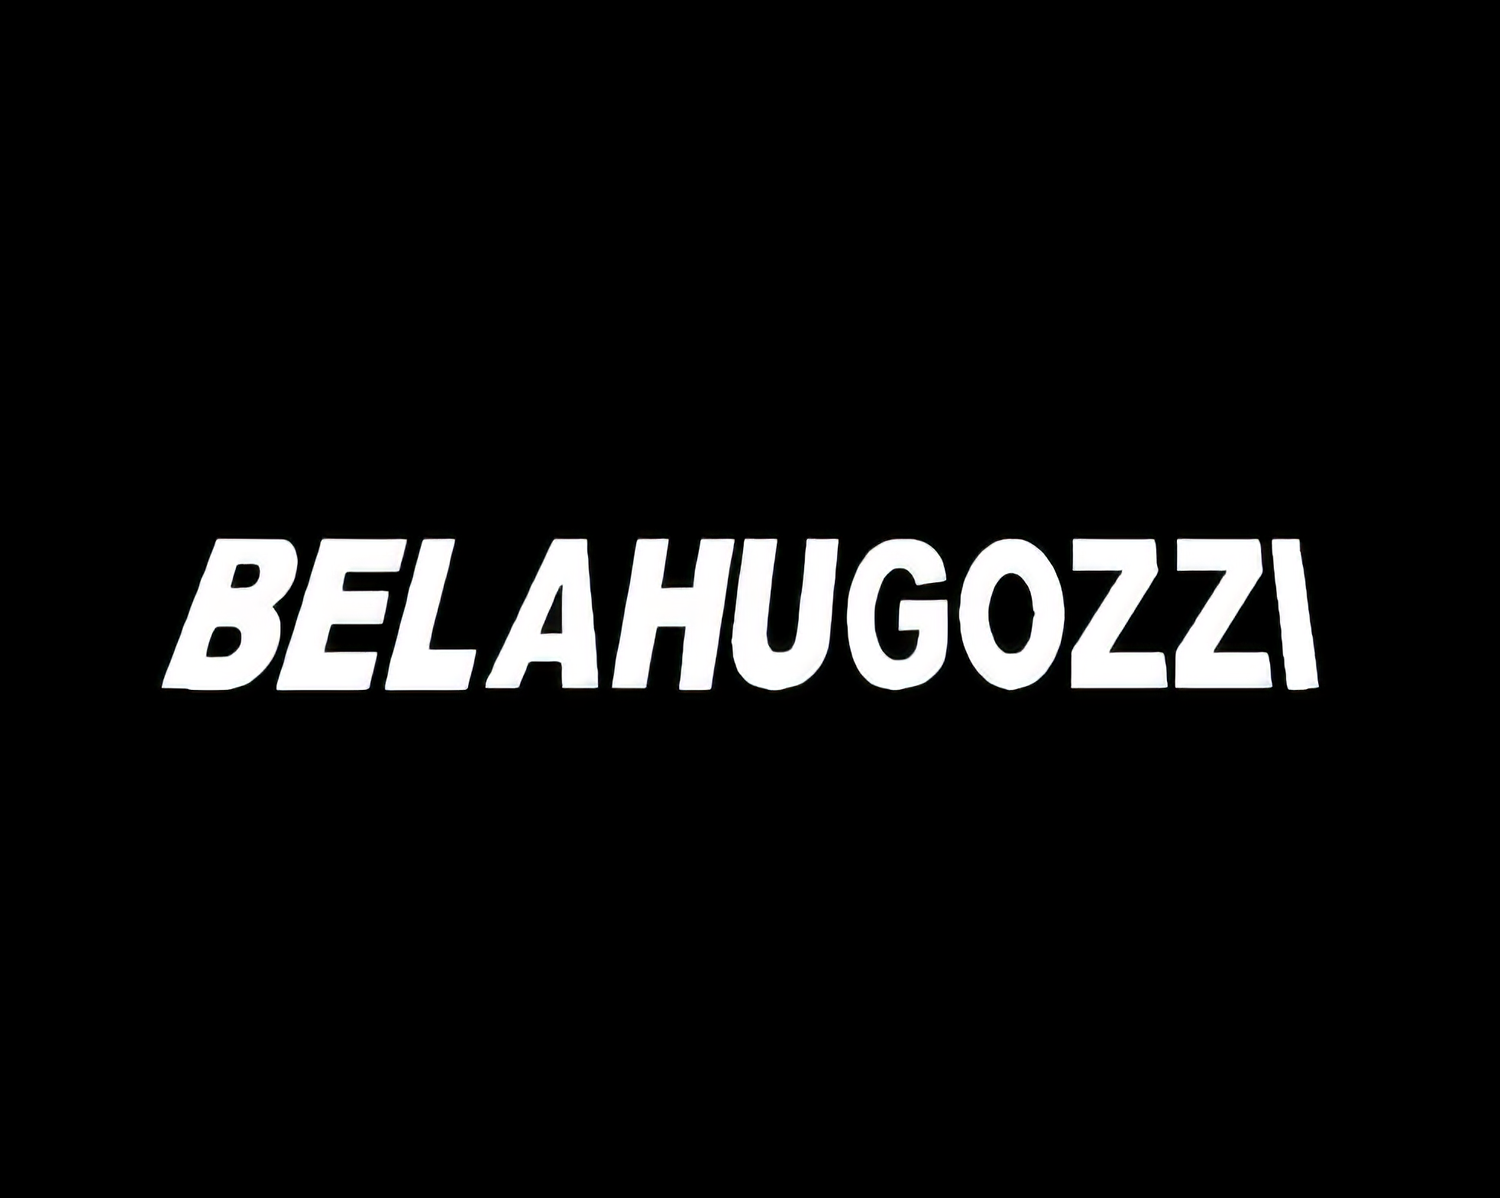 Belahugozzi